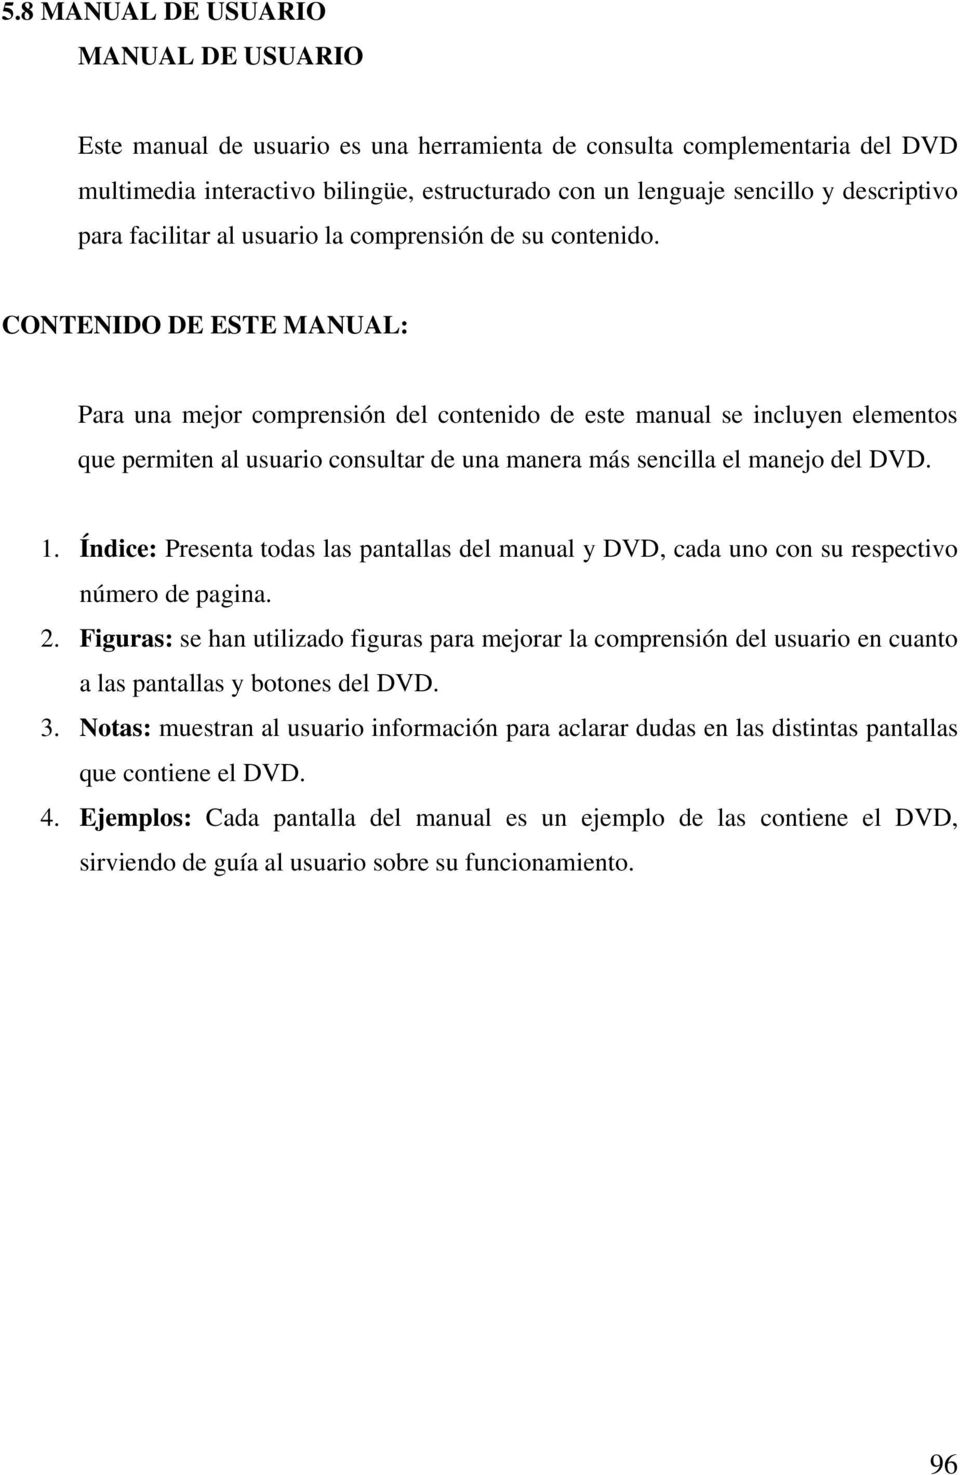 CONTENIDO DE ESTE MANUAL: Para una mejor comprensión del contenido de este manual se incluyen elementos que permiten al usuario consultar de una manera más sencilla el manejo del DVD. 1.